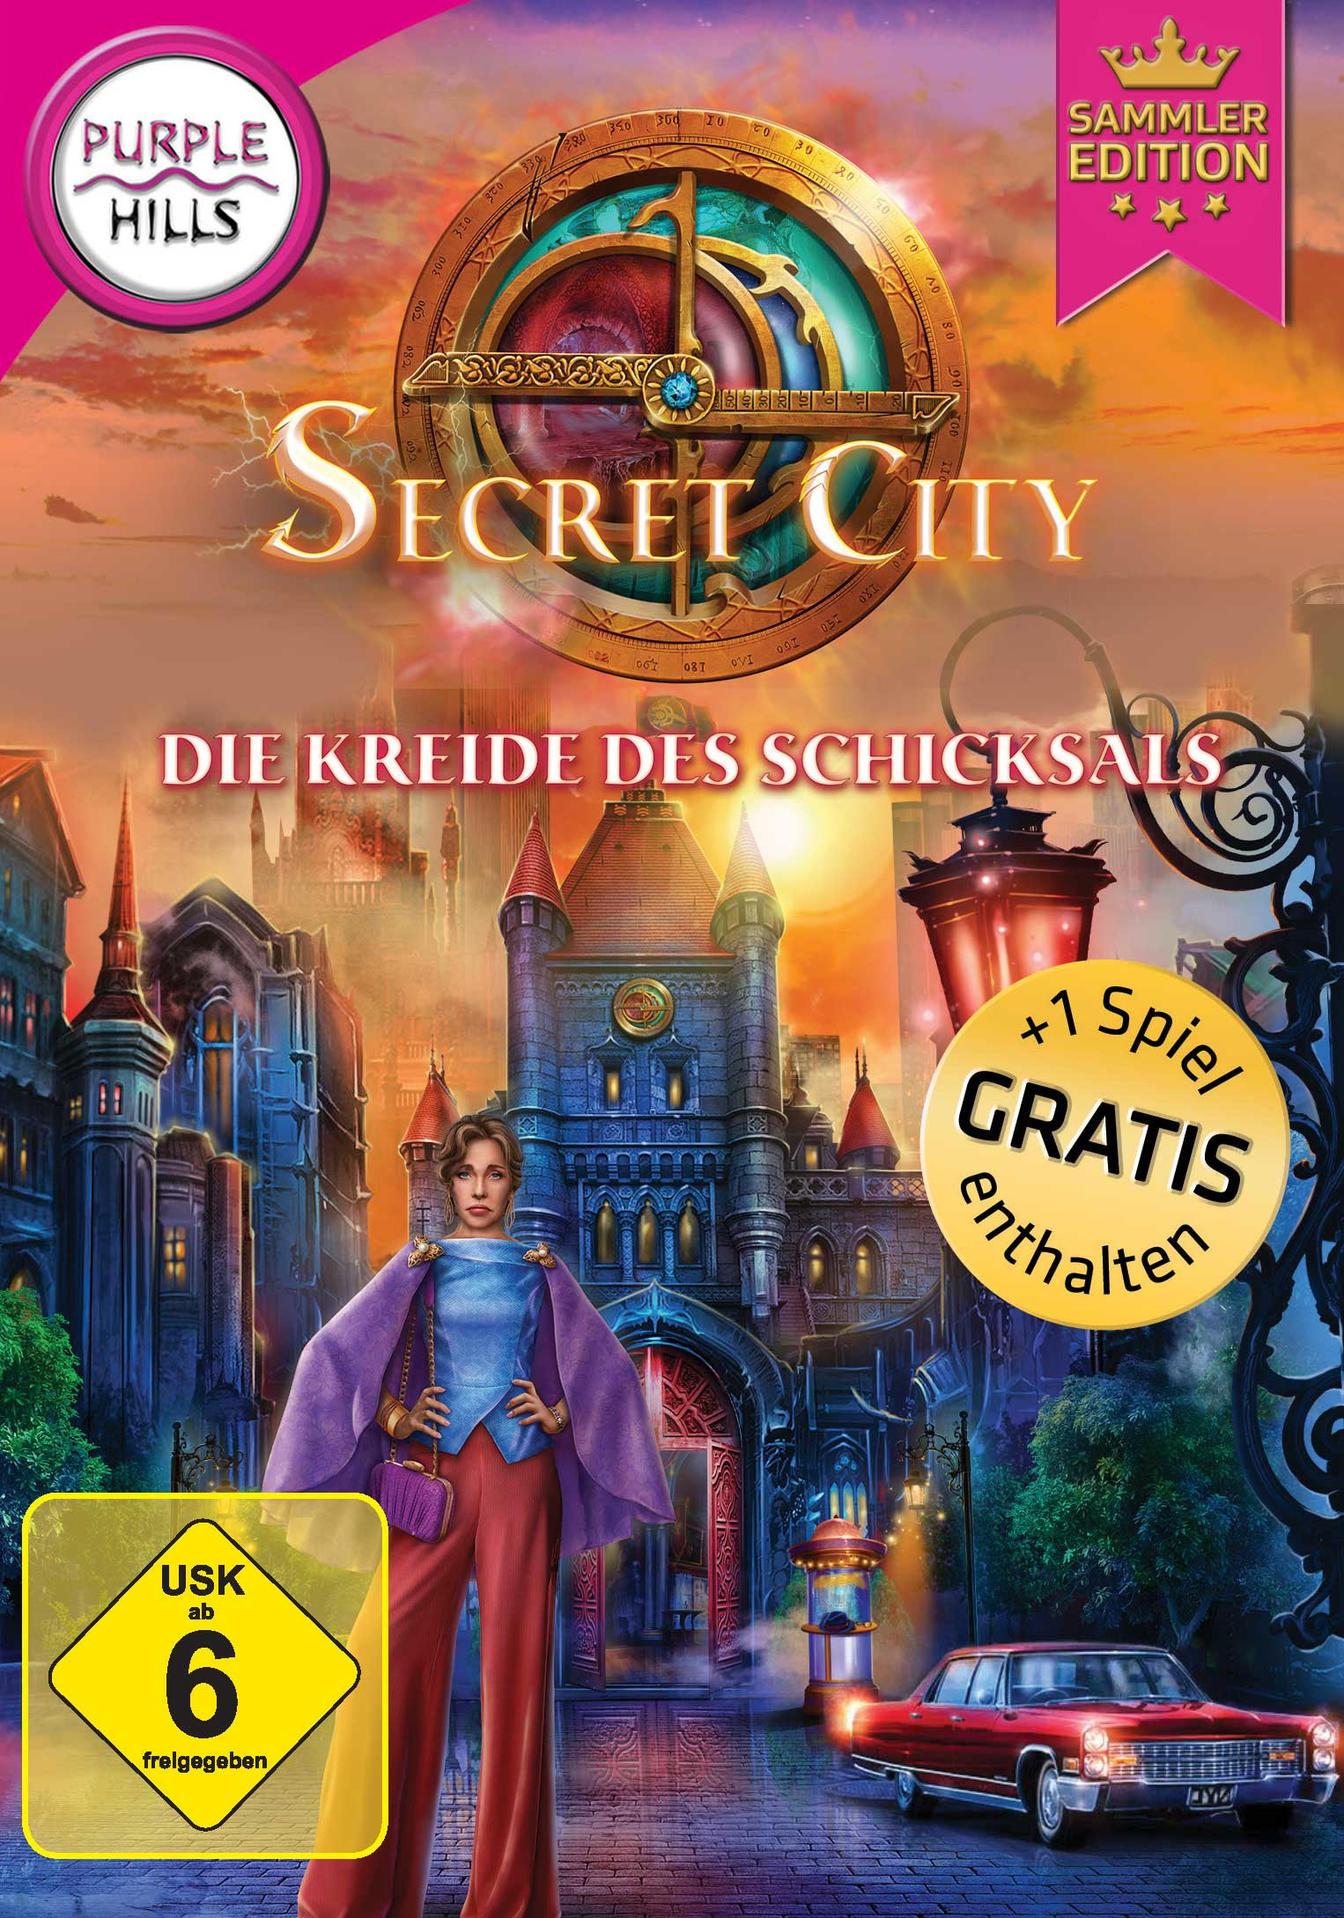 4: Die City Secret - - Schicksals Sammleredition [PC] des Kreide